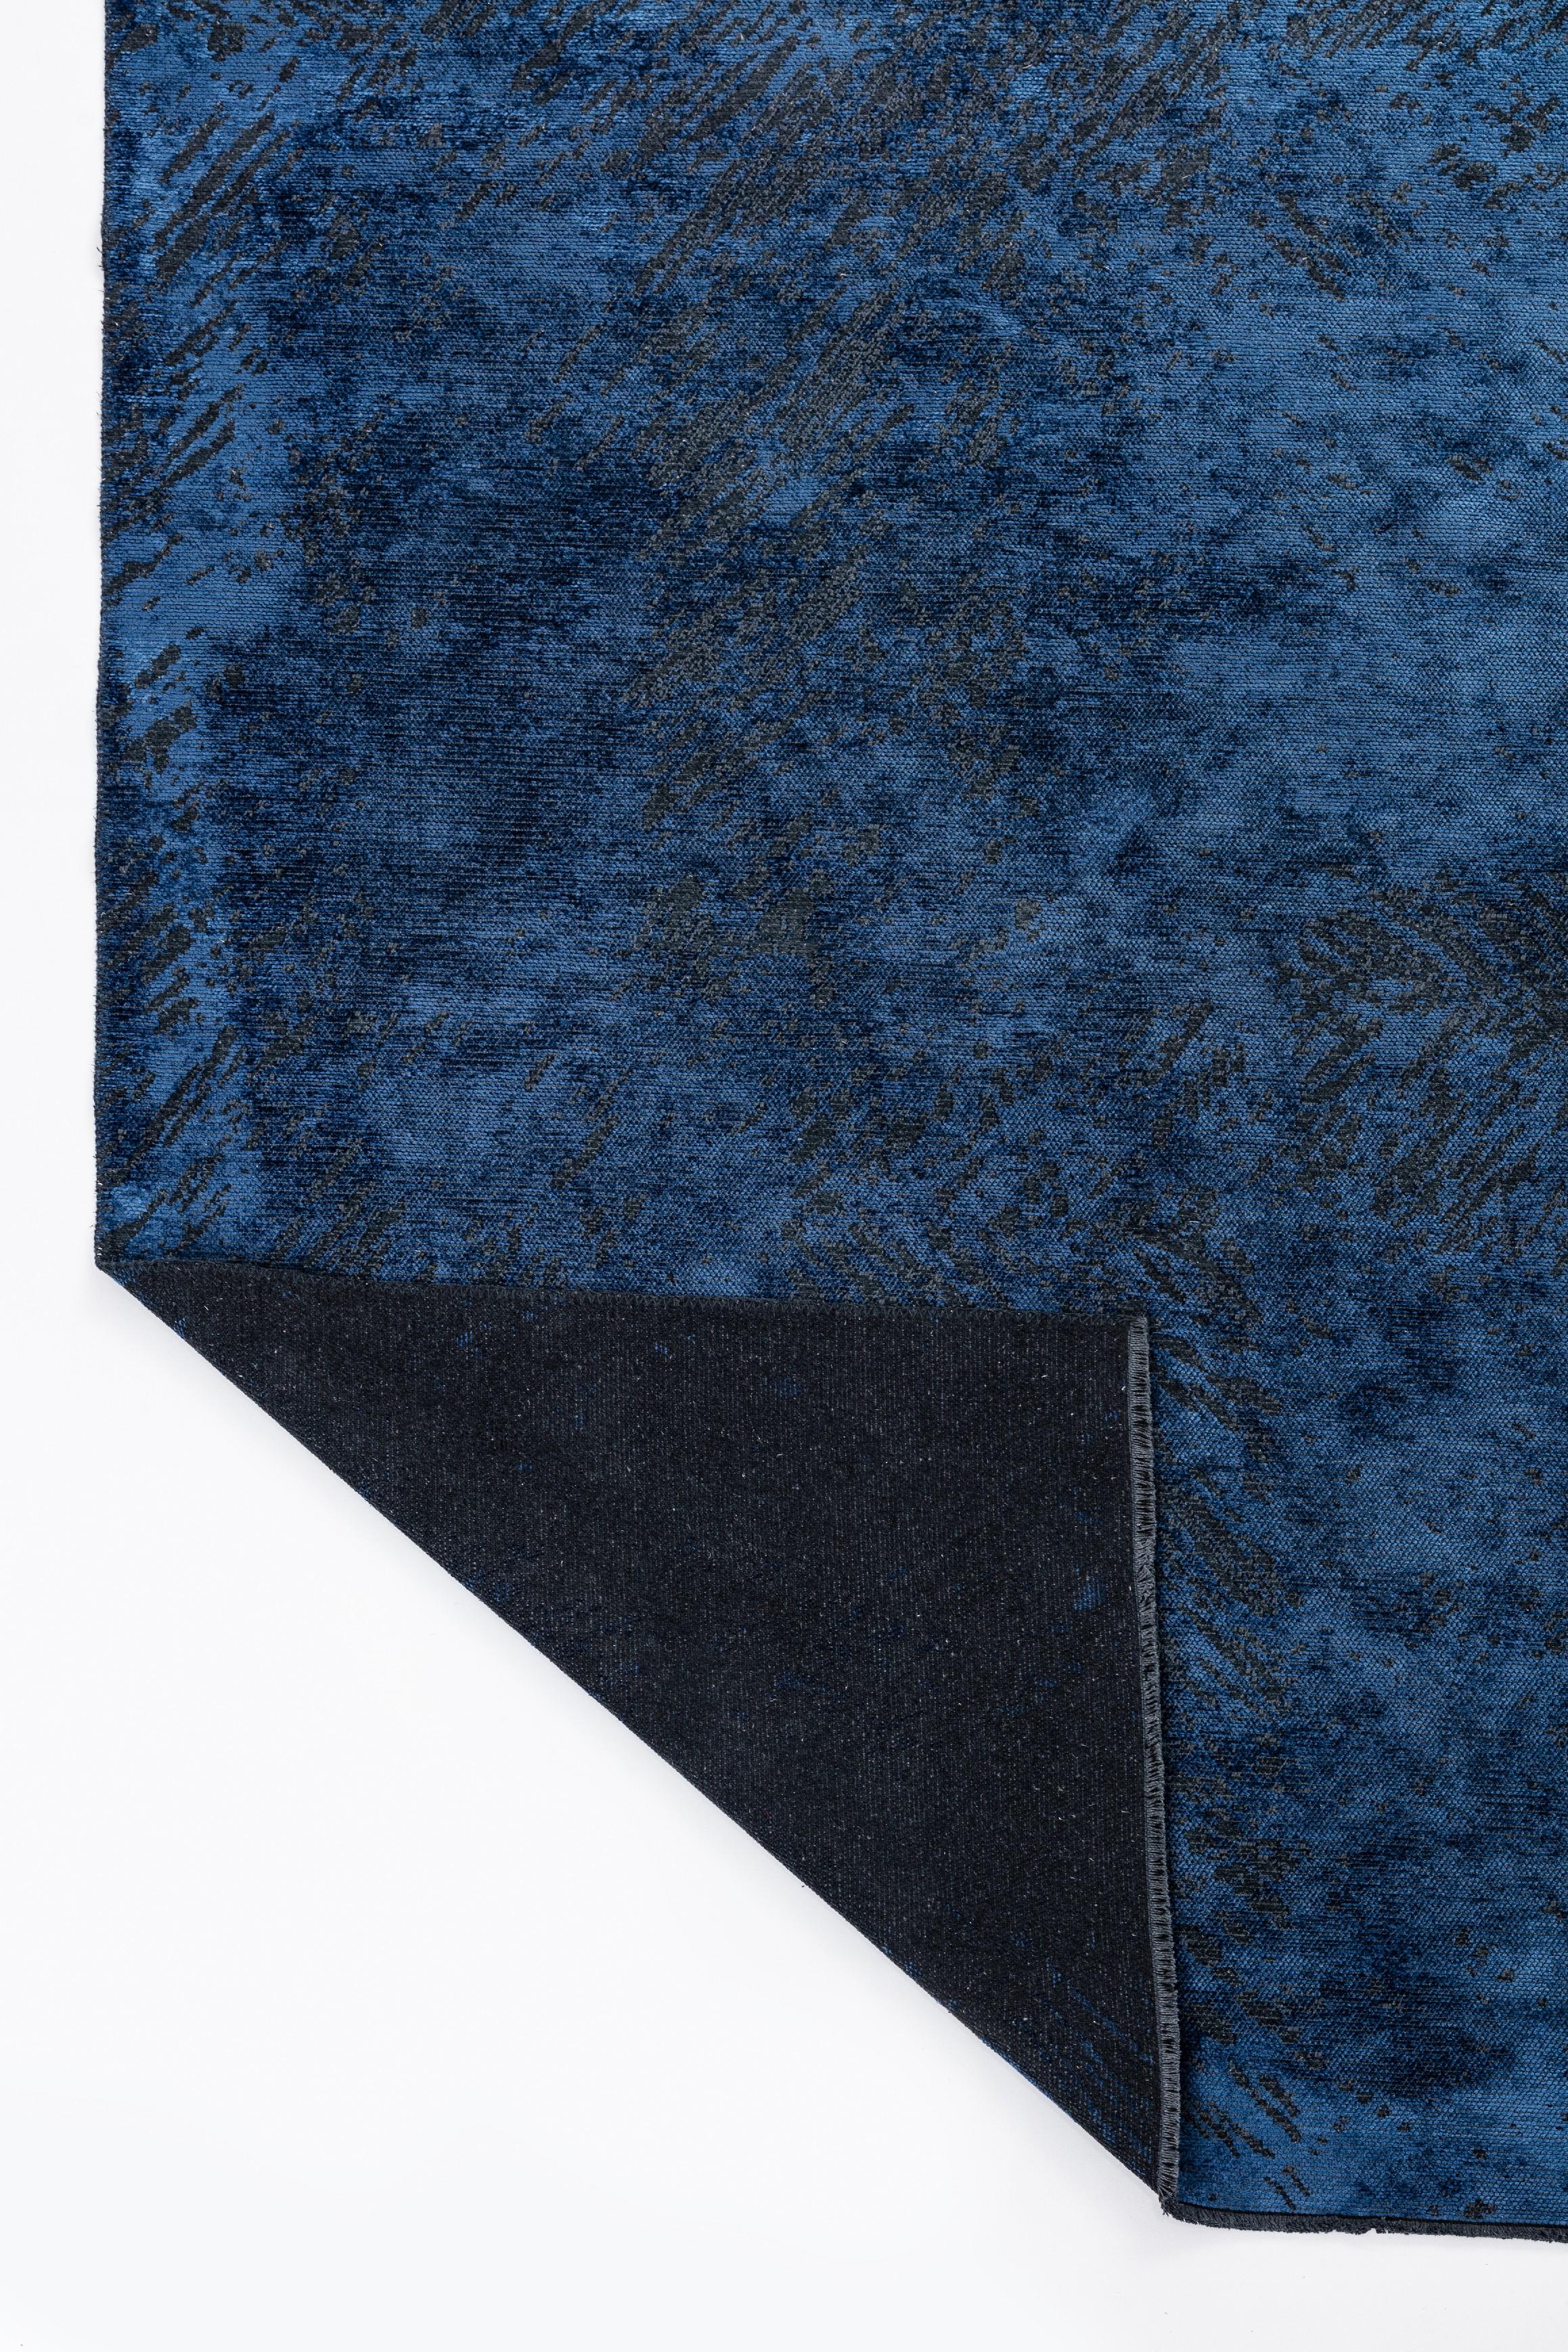 Im Angebot: Moderner abstrakter Luxus-Teppichboden,  (Blau) 3